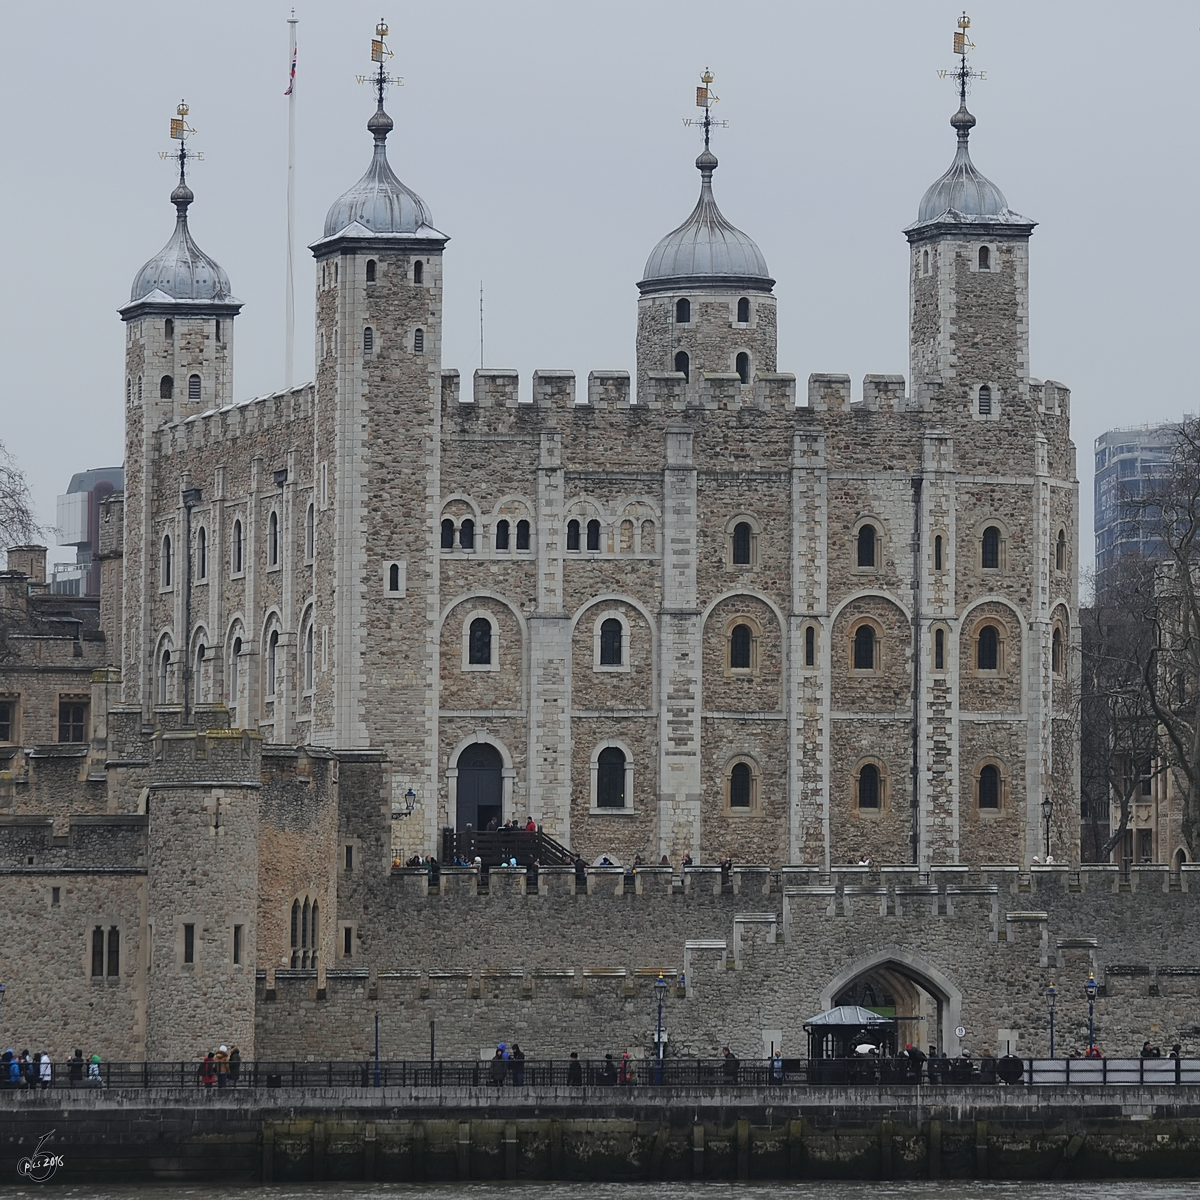 Der White Tower als Teil des Towers von London. (März 2013)